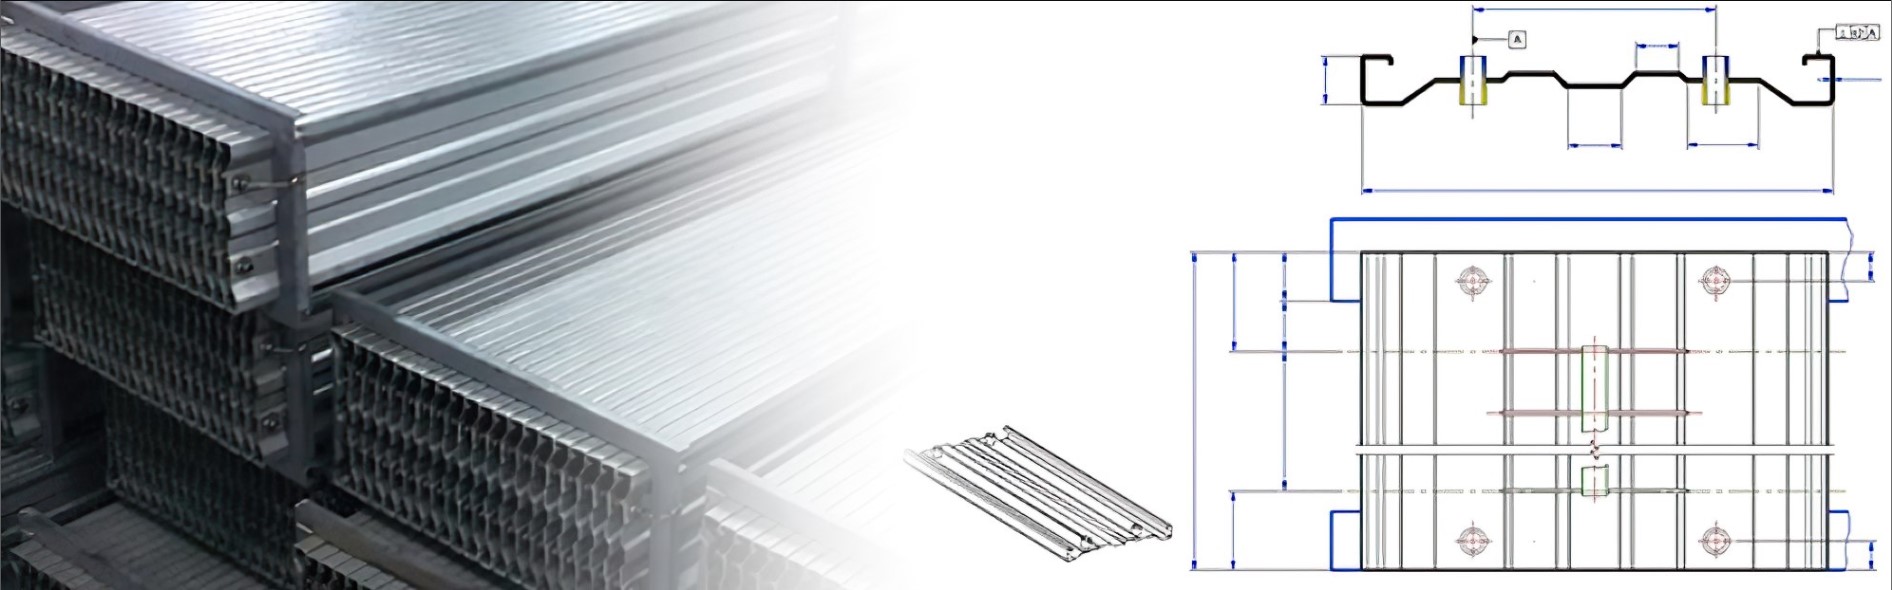 KWS Industrietechnik - Elektrofilterteile - Kollektorplatten für elektrostatische Filter - Collecting plates